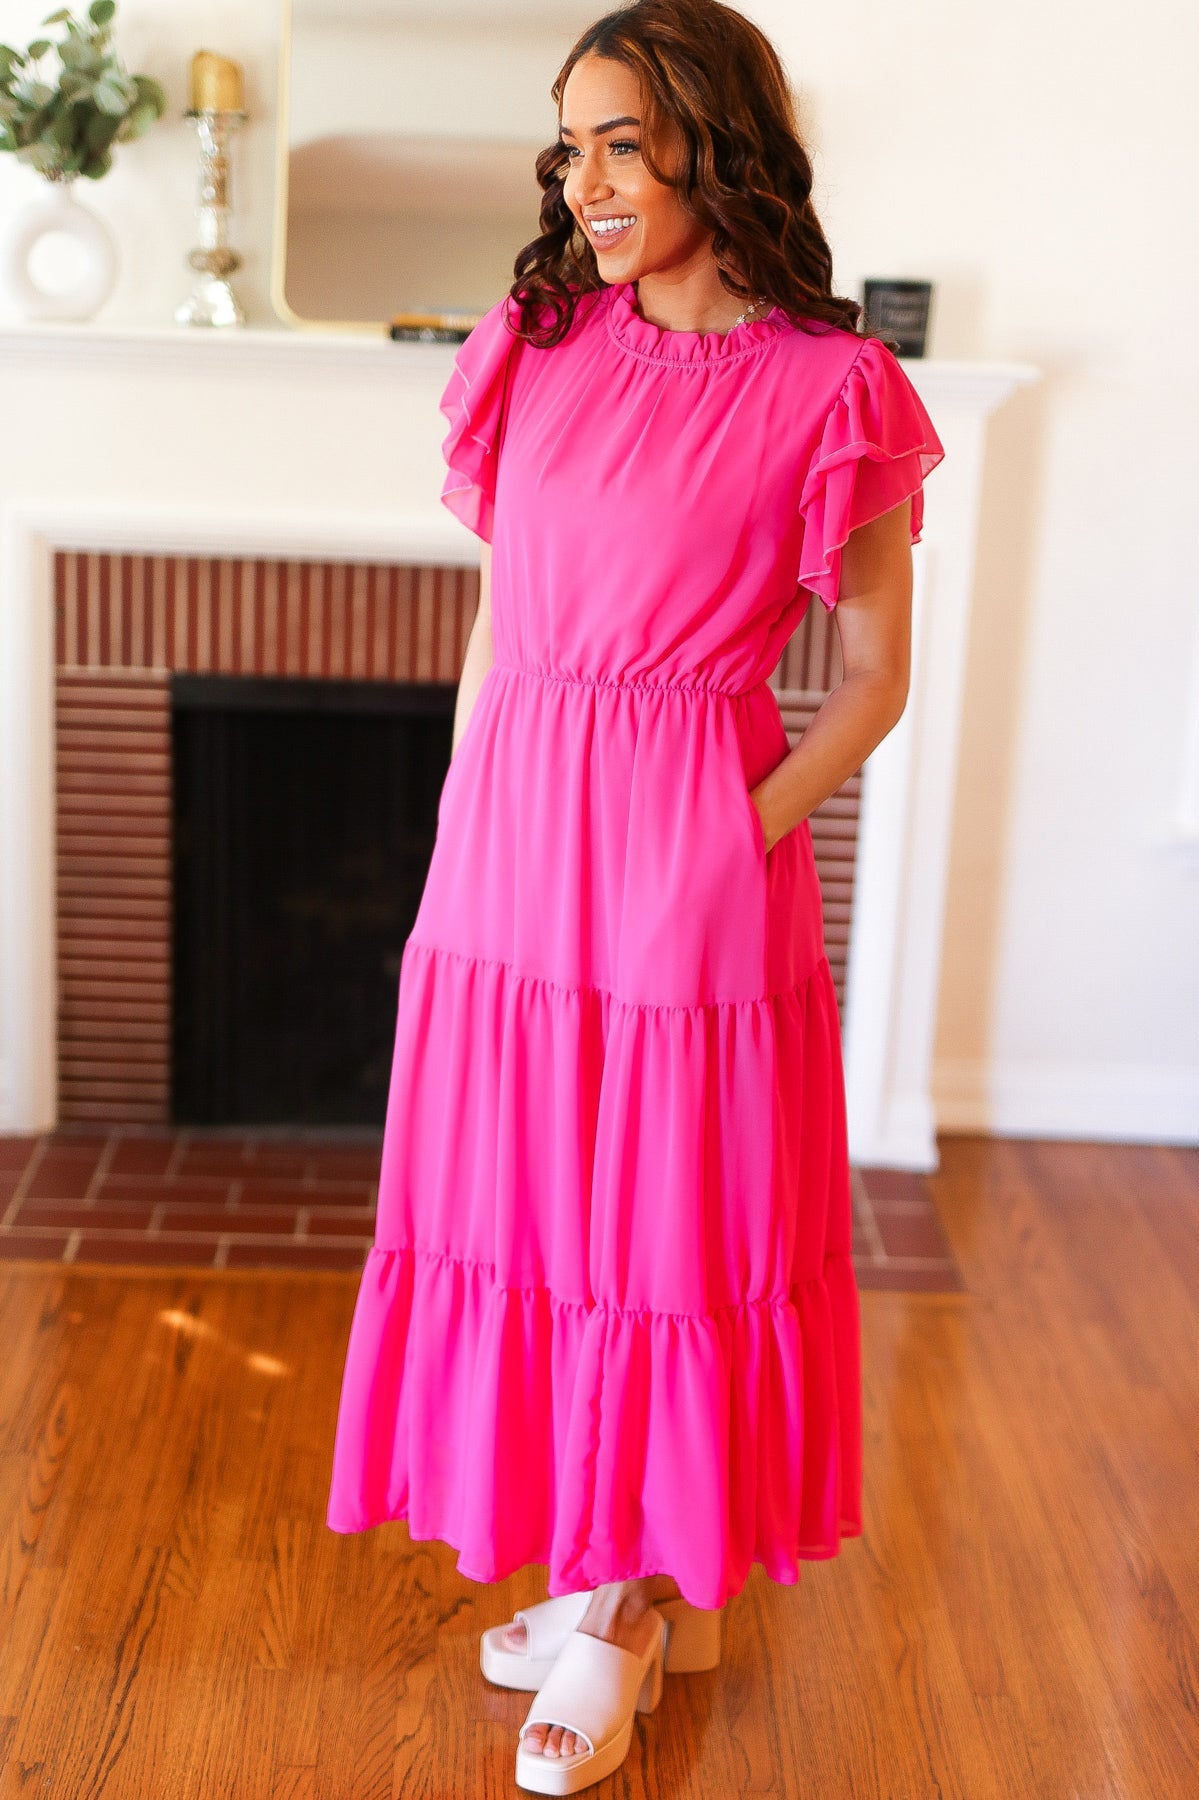 Perfectly You Hot Pink Mock Neck Tiered Chiffon Maxi Dress Haptics